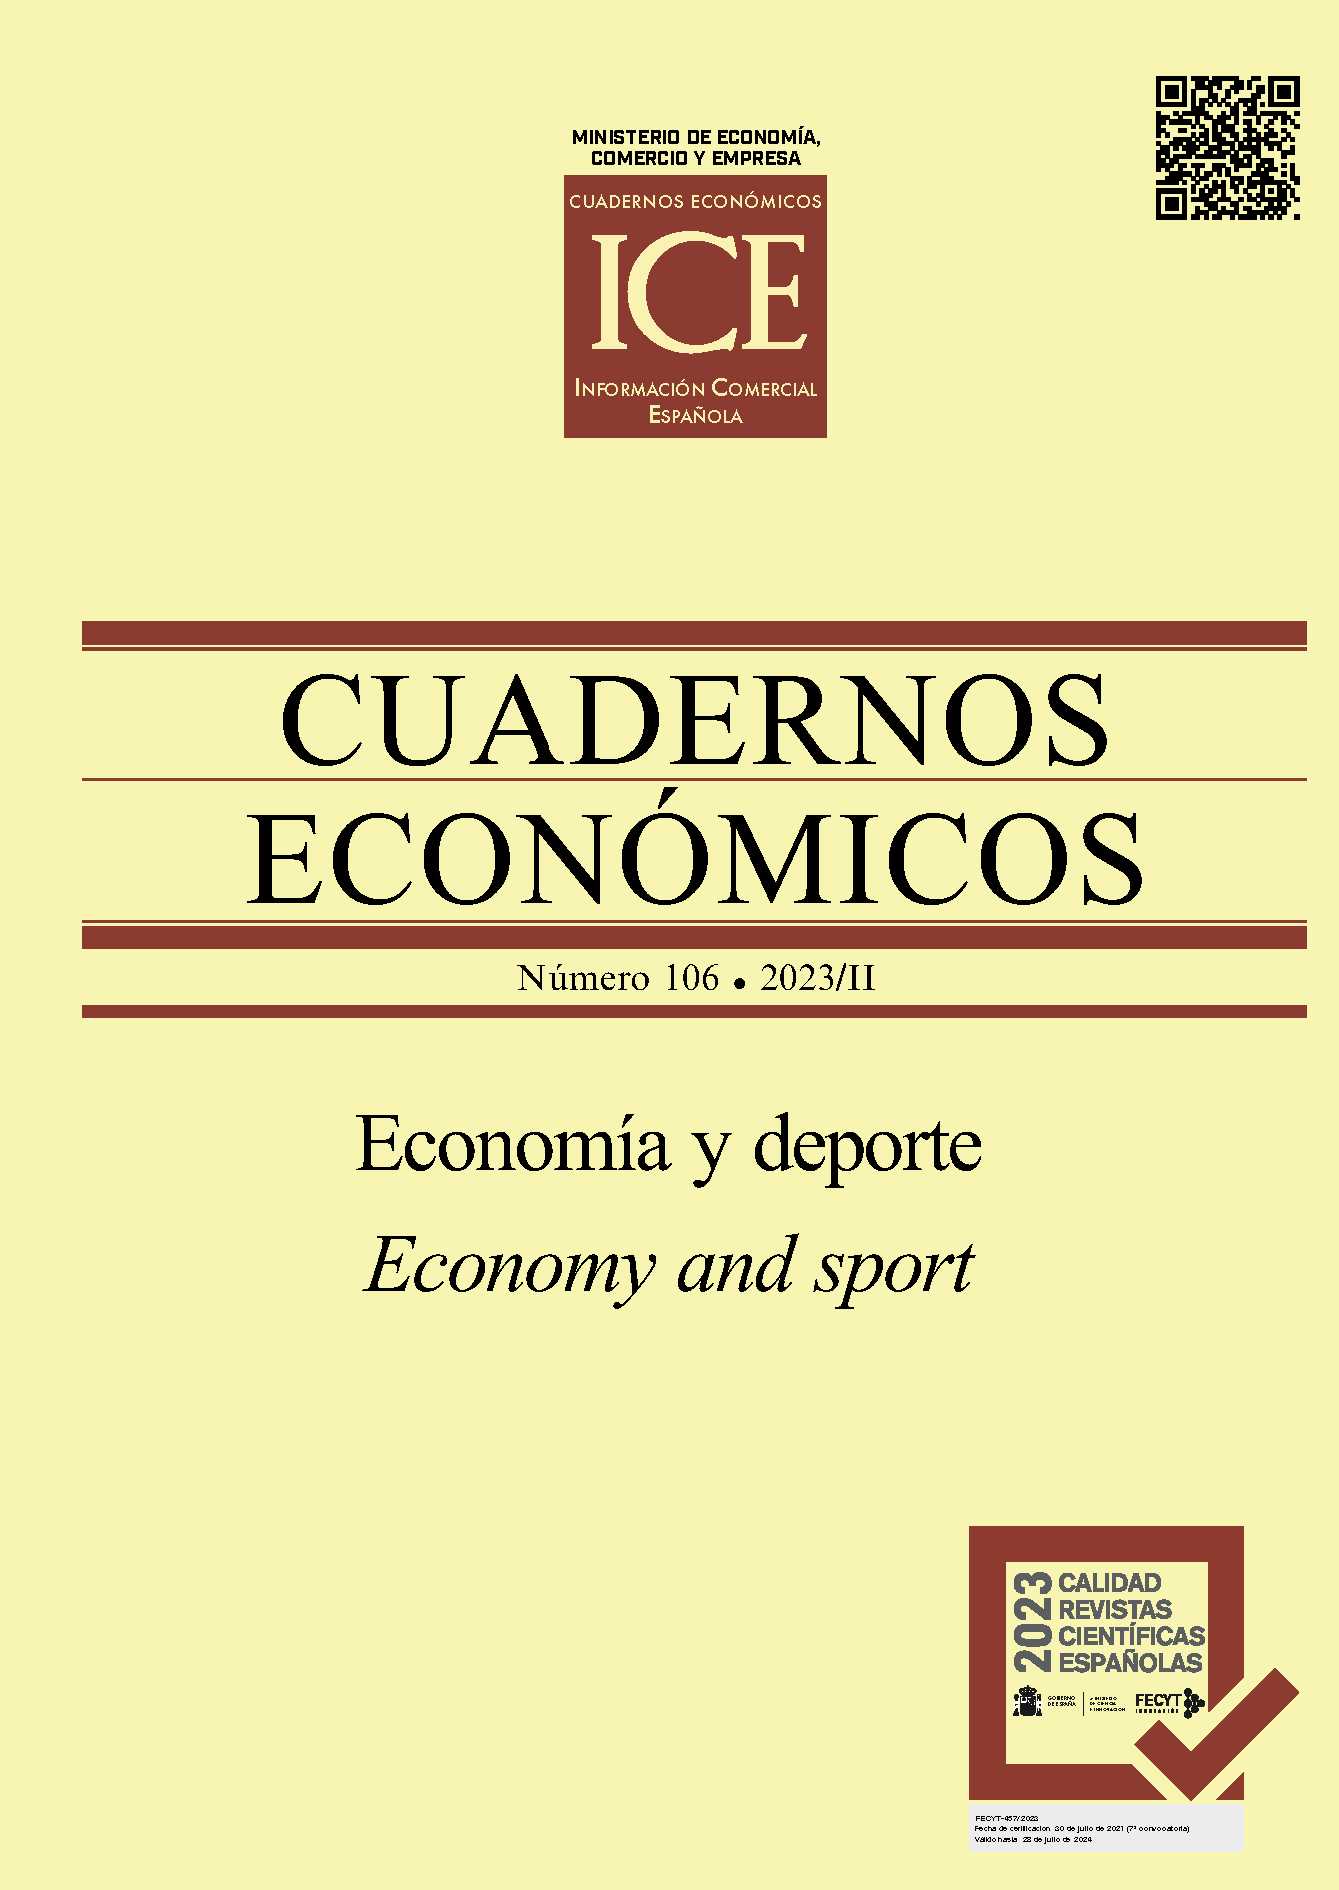 Notebooks Economic ICE